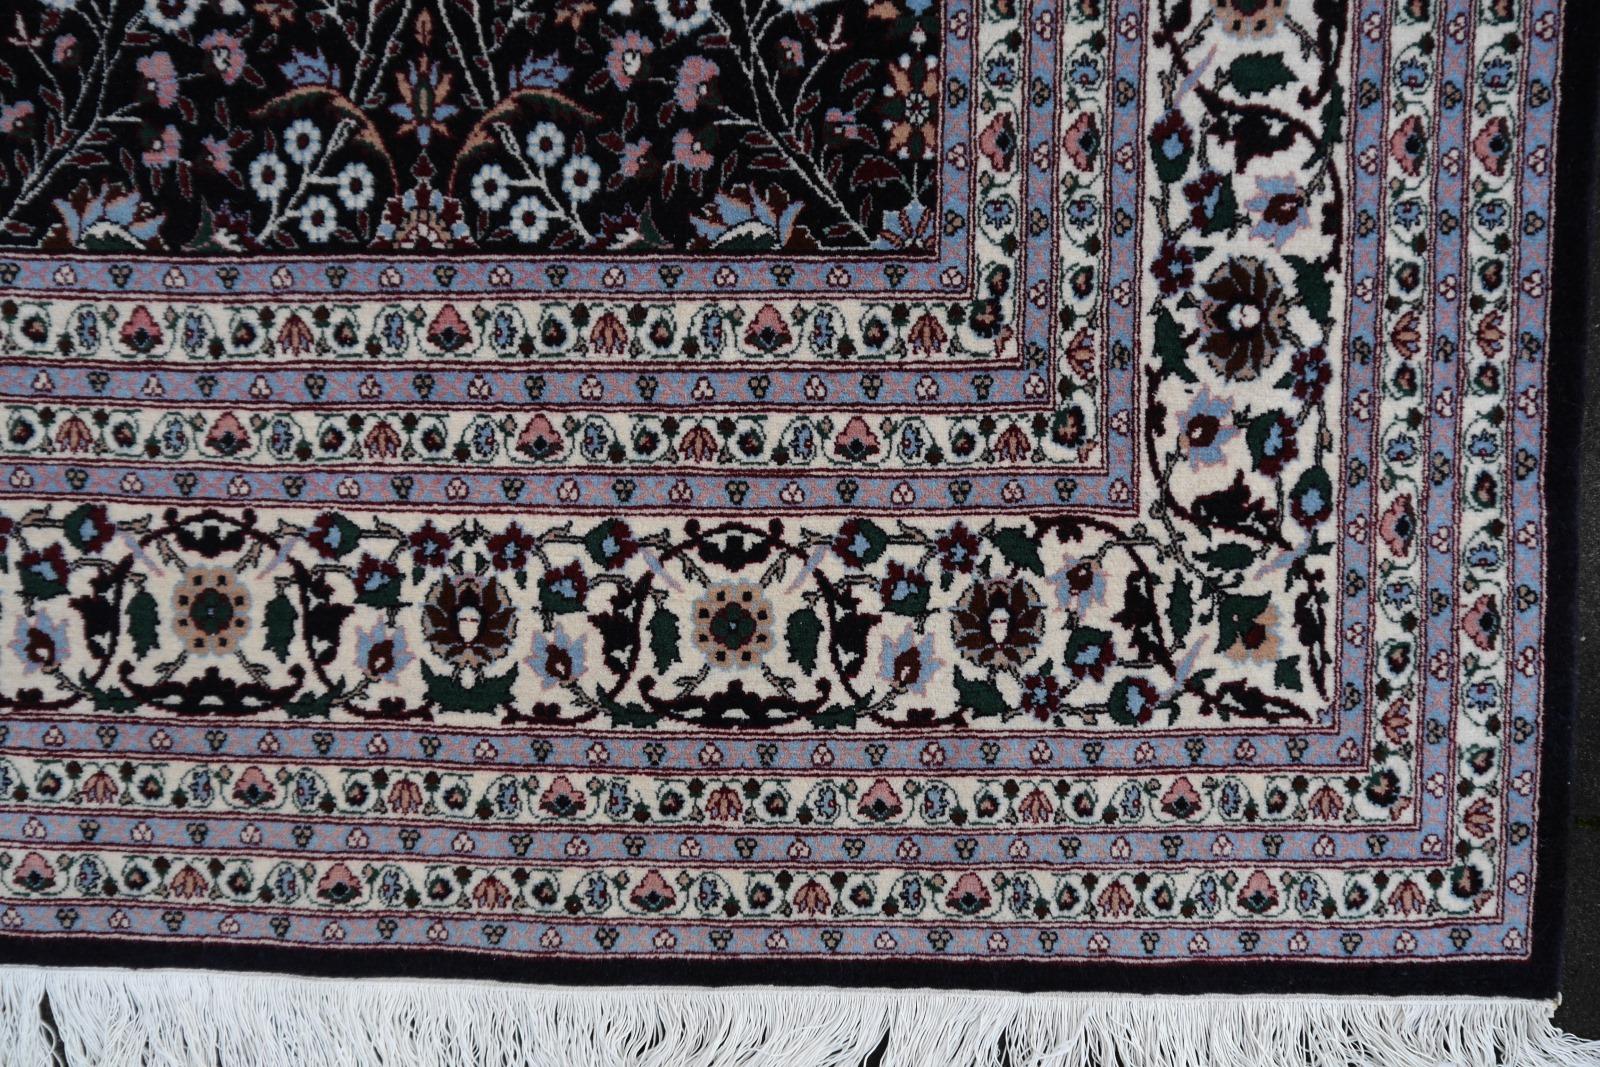 Hand-Knotted Fine Turkish Hereke Rug Large Room Size Black Creme Blue Floral All-Over Design